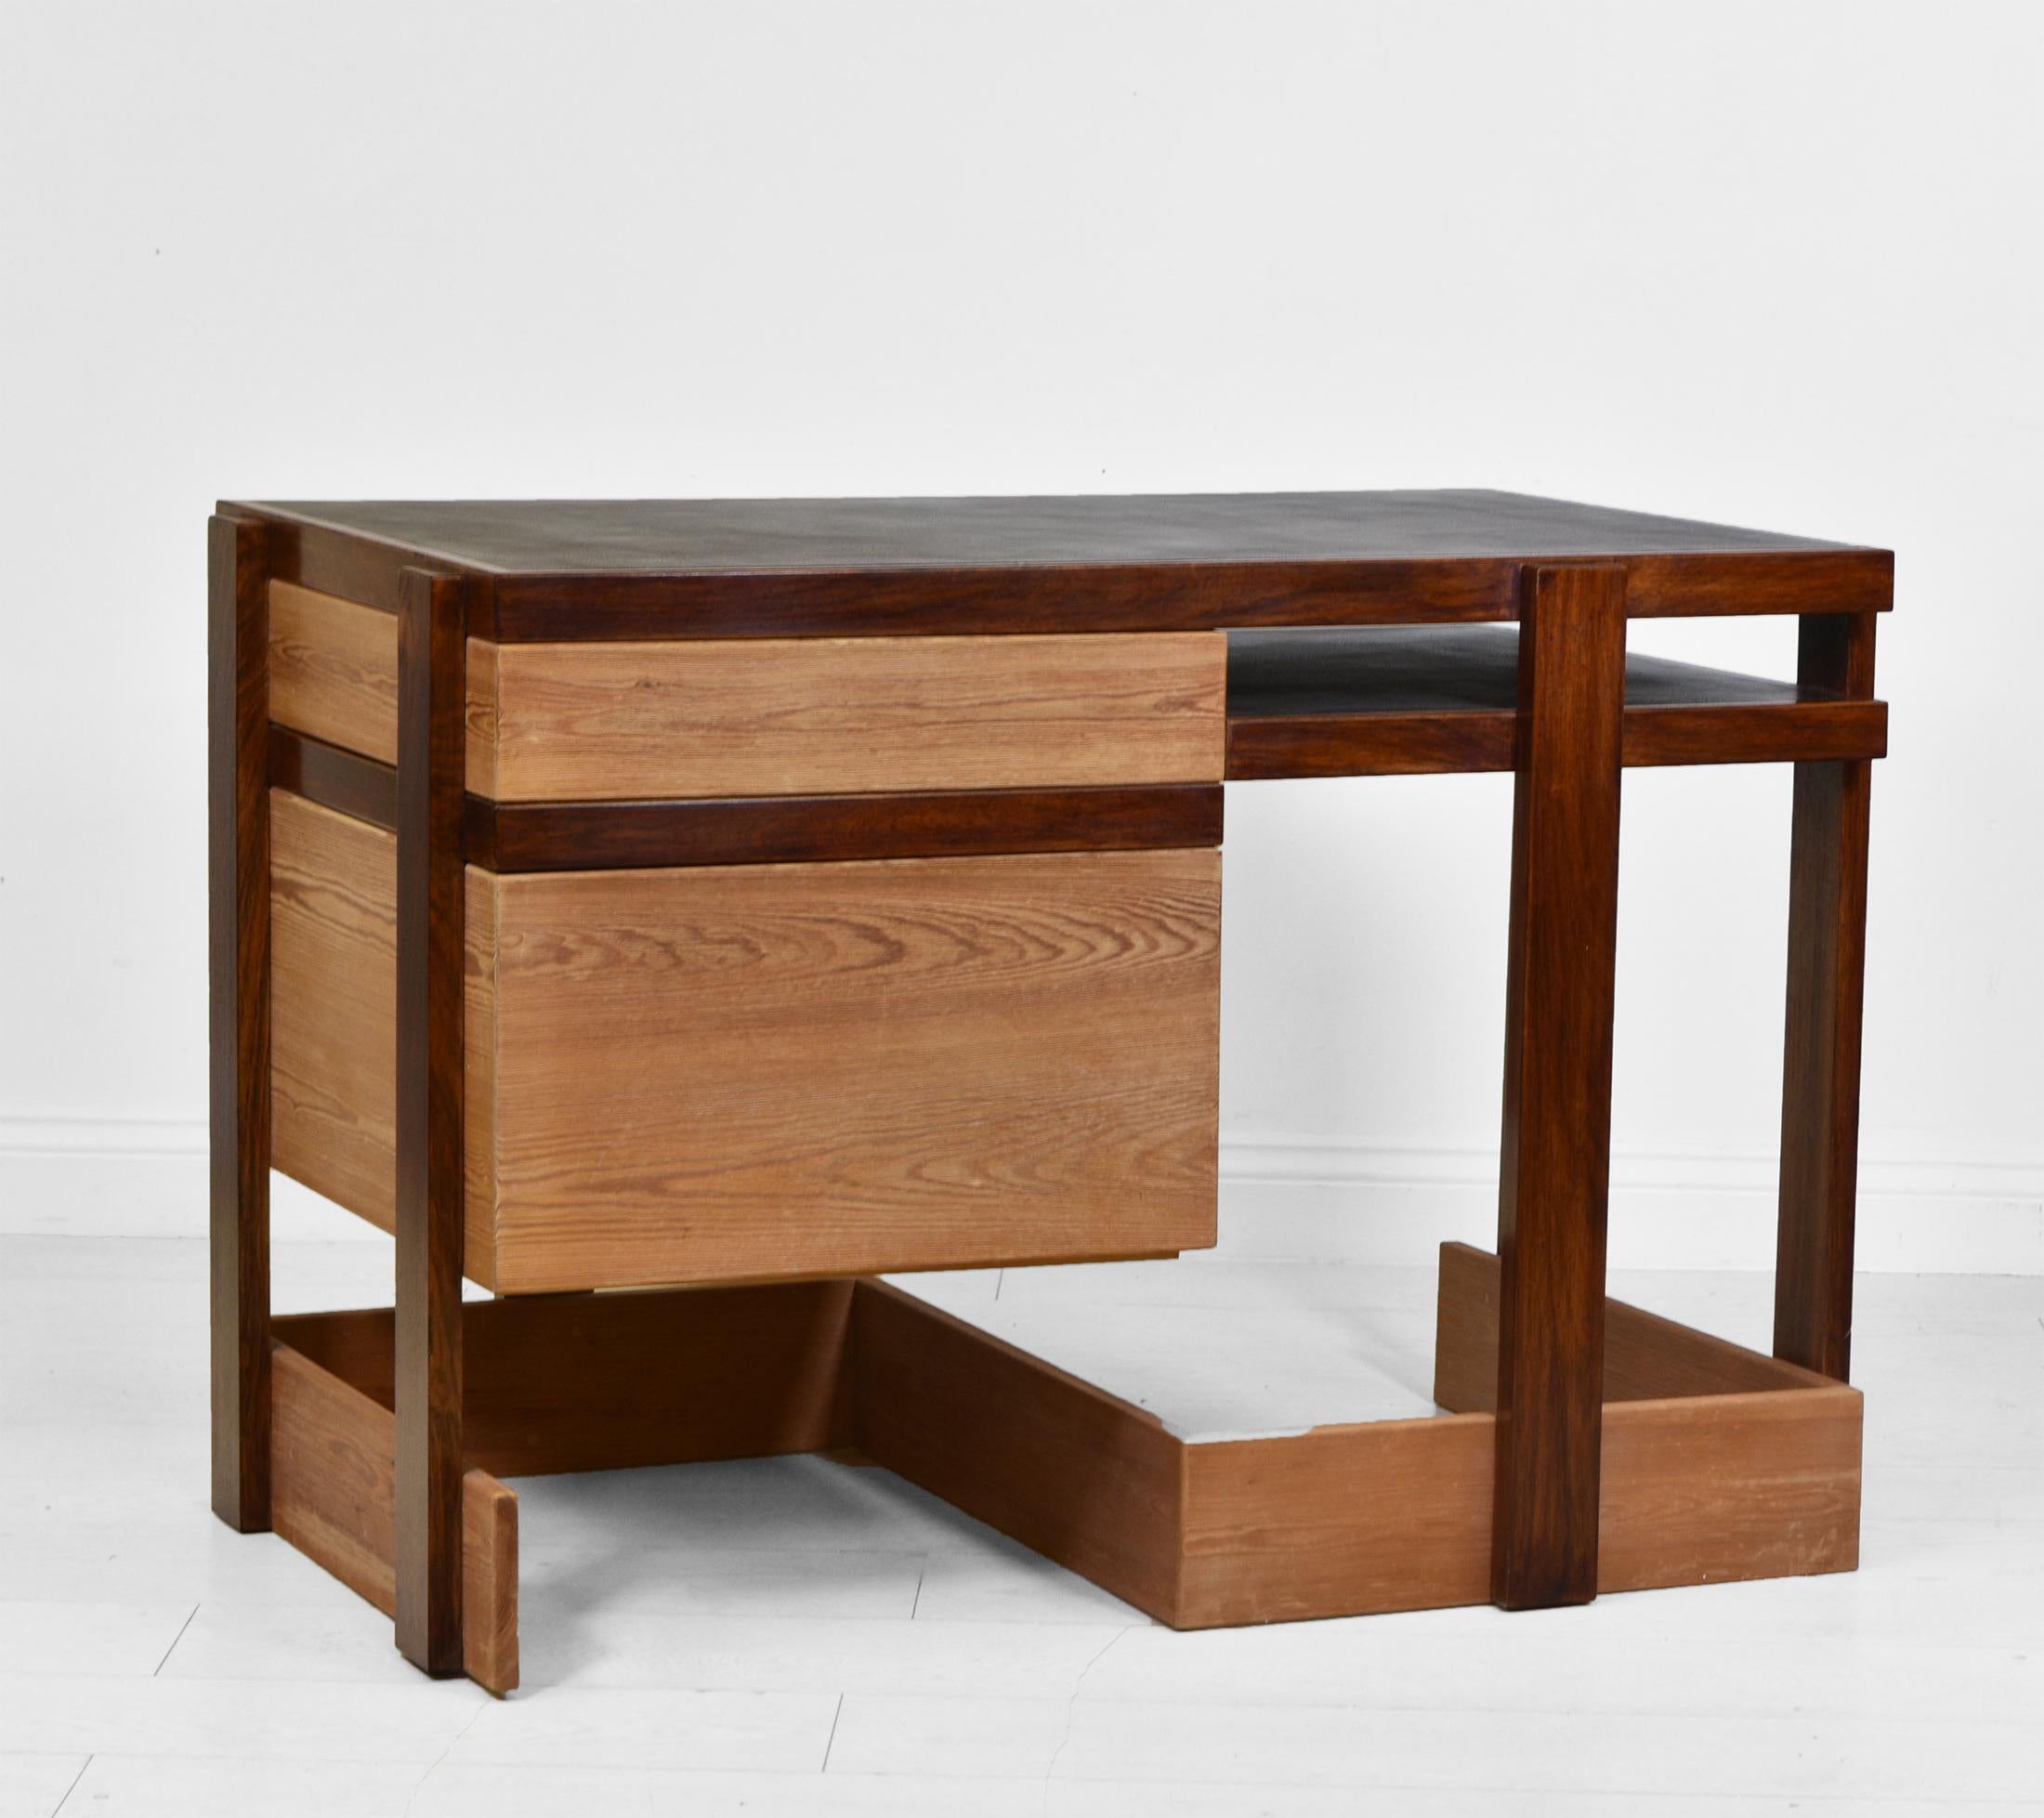 Ein englischer Schreibtisch im modernistischen Stil aus massivem Bombay-Palisander und geschrubbtem Kiefernholz sowie ein Stuhl aus Palisander und Leder, hergestellt von George Sneed. Ca. 1978.

Der Schreibtisch wird mit einer wunderbaren